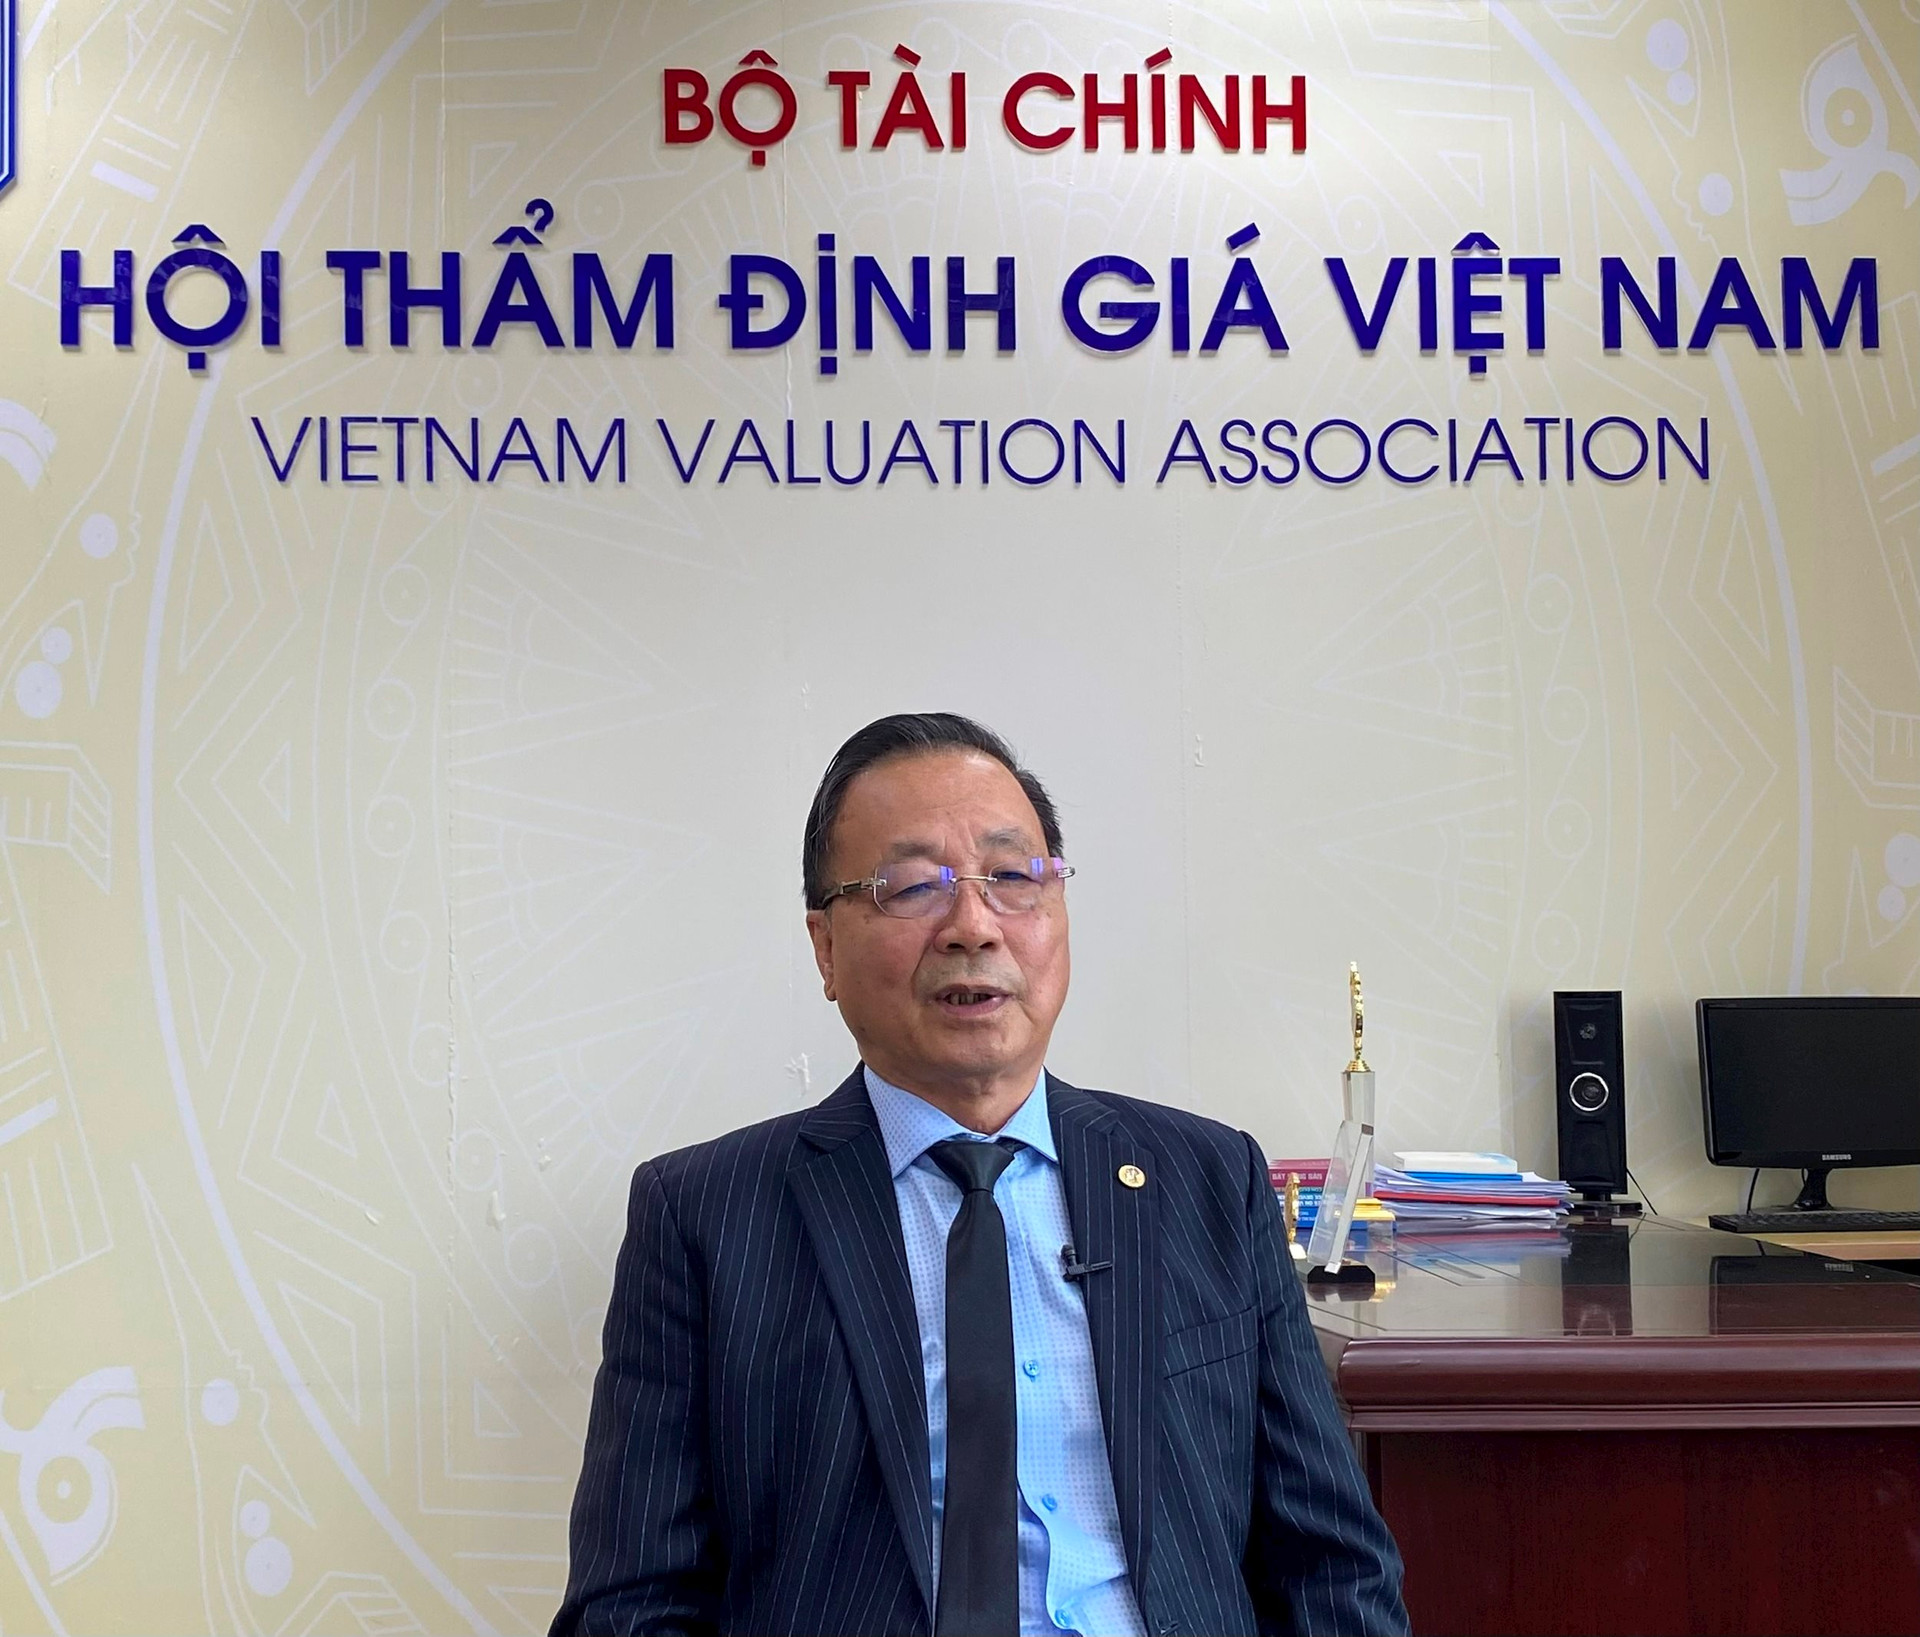 Chủ tịch Hội Thẩm định giá Việt Nam chỉ ra 3 bất cập khi sử dụng phương pháp hệ số làm “thước đo” trong định giá đất